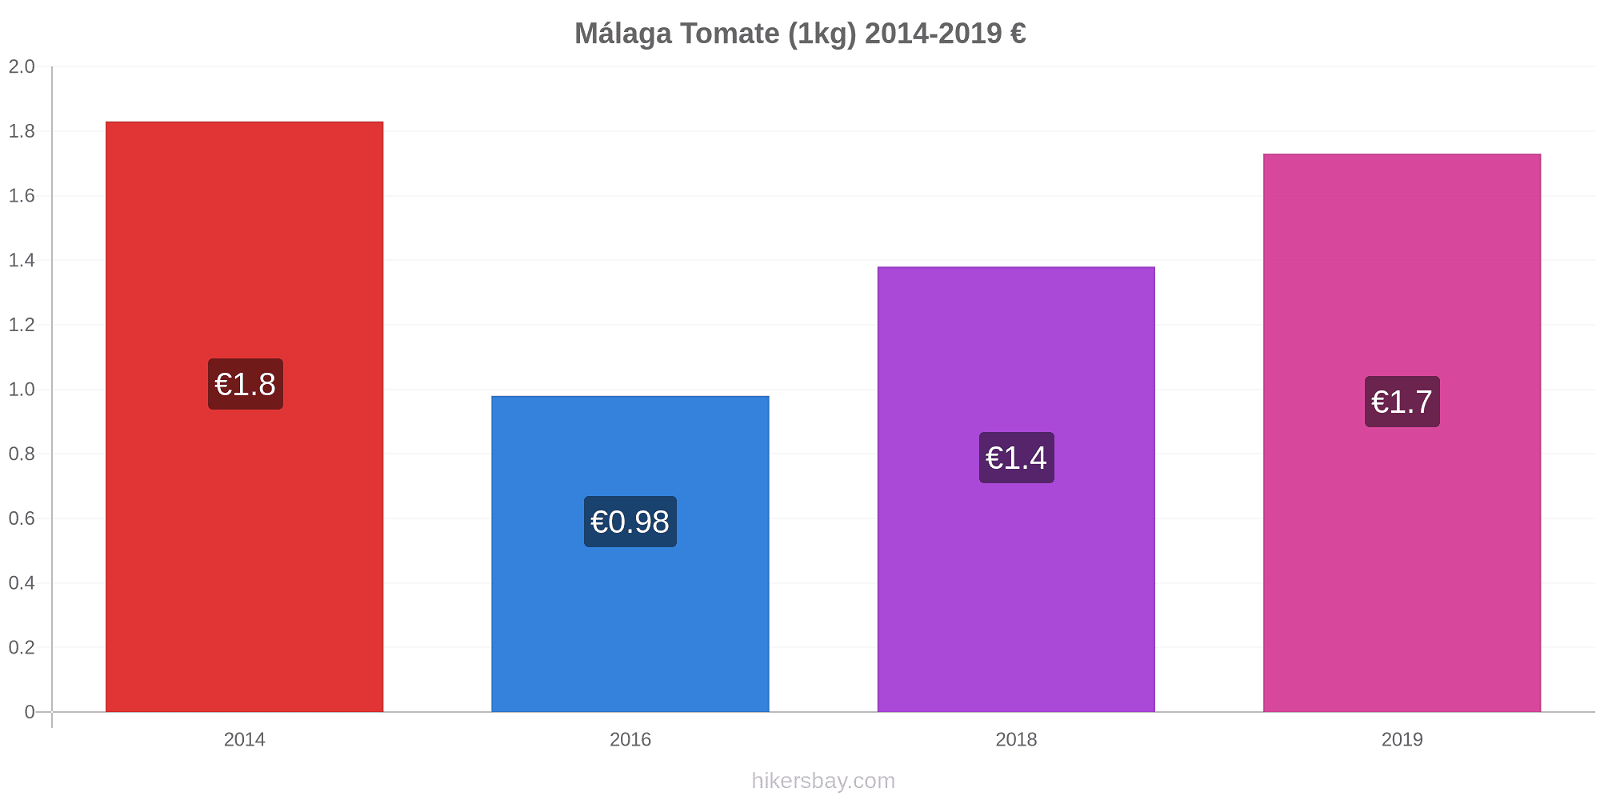 Málaga cambios de precios Tomate (1kg) hikersbay.com